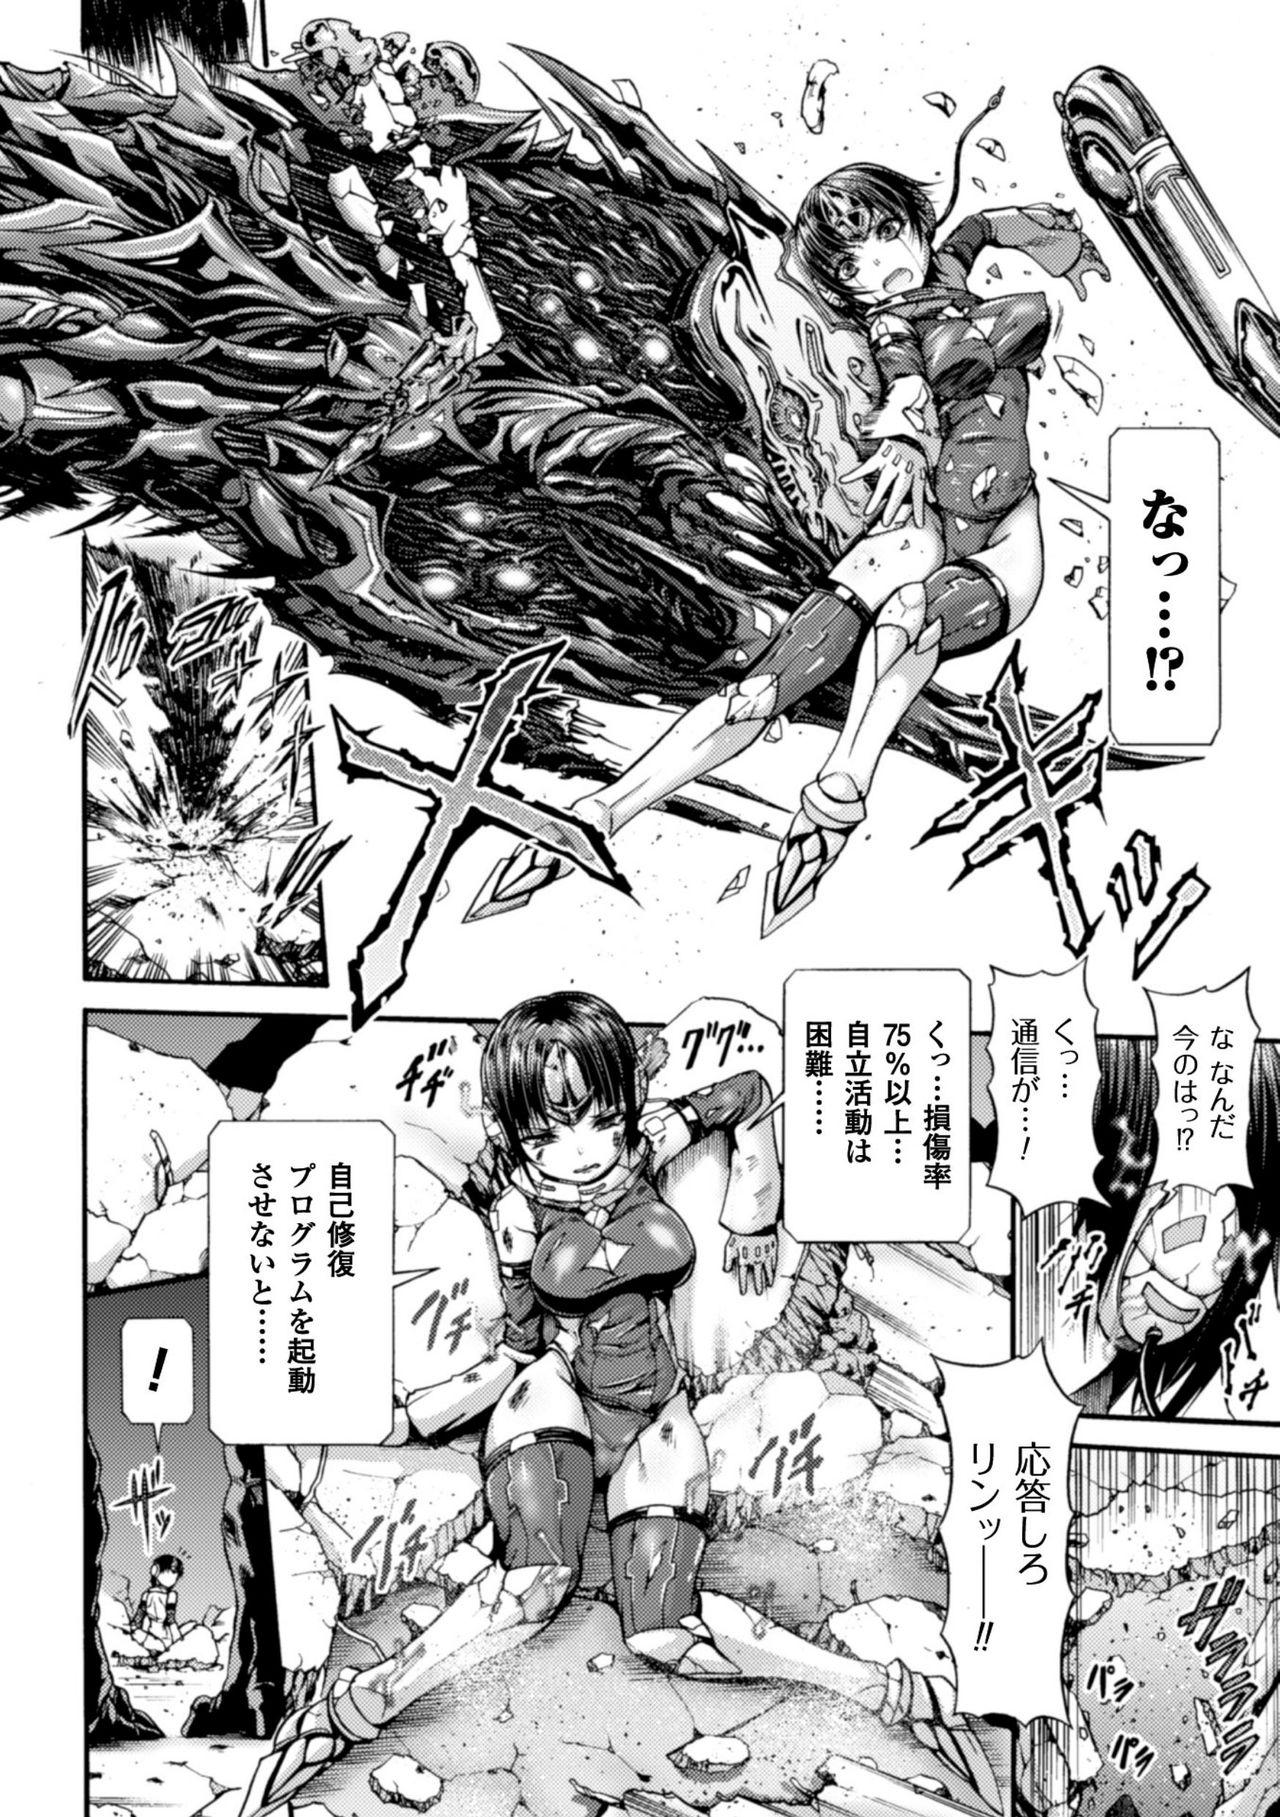 Seigi no Heroine Kangoku File Vol. 8 59